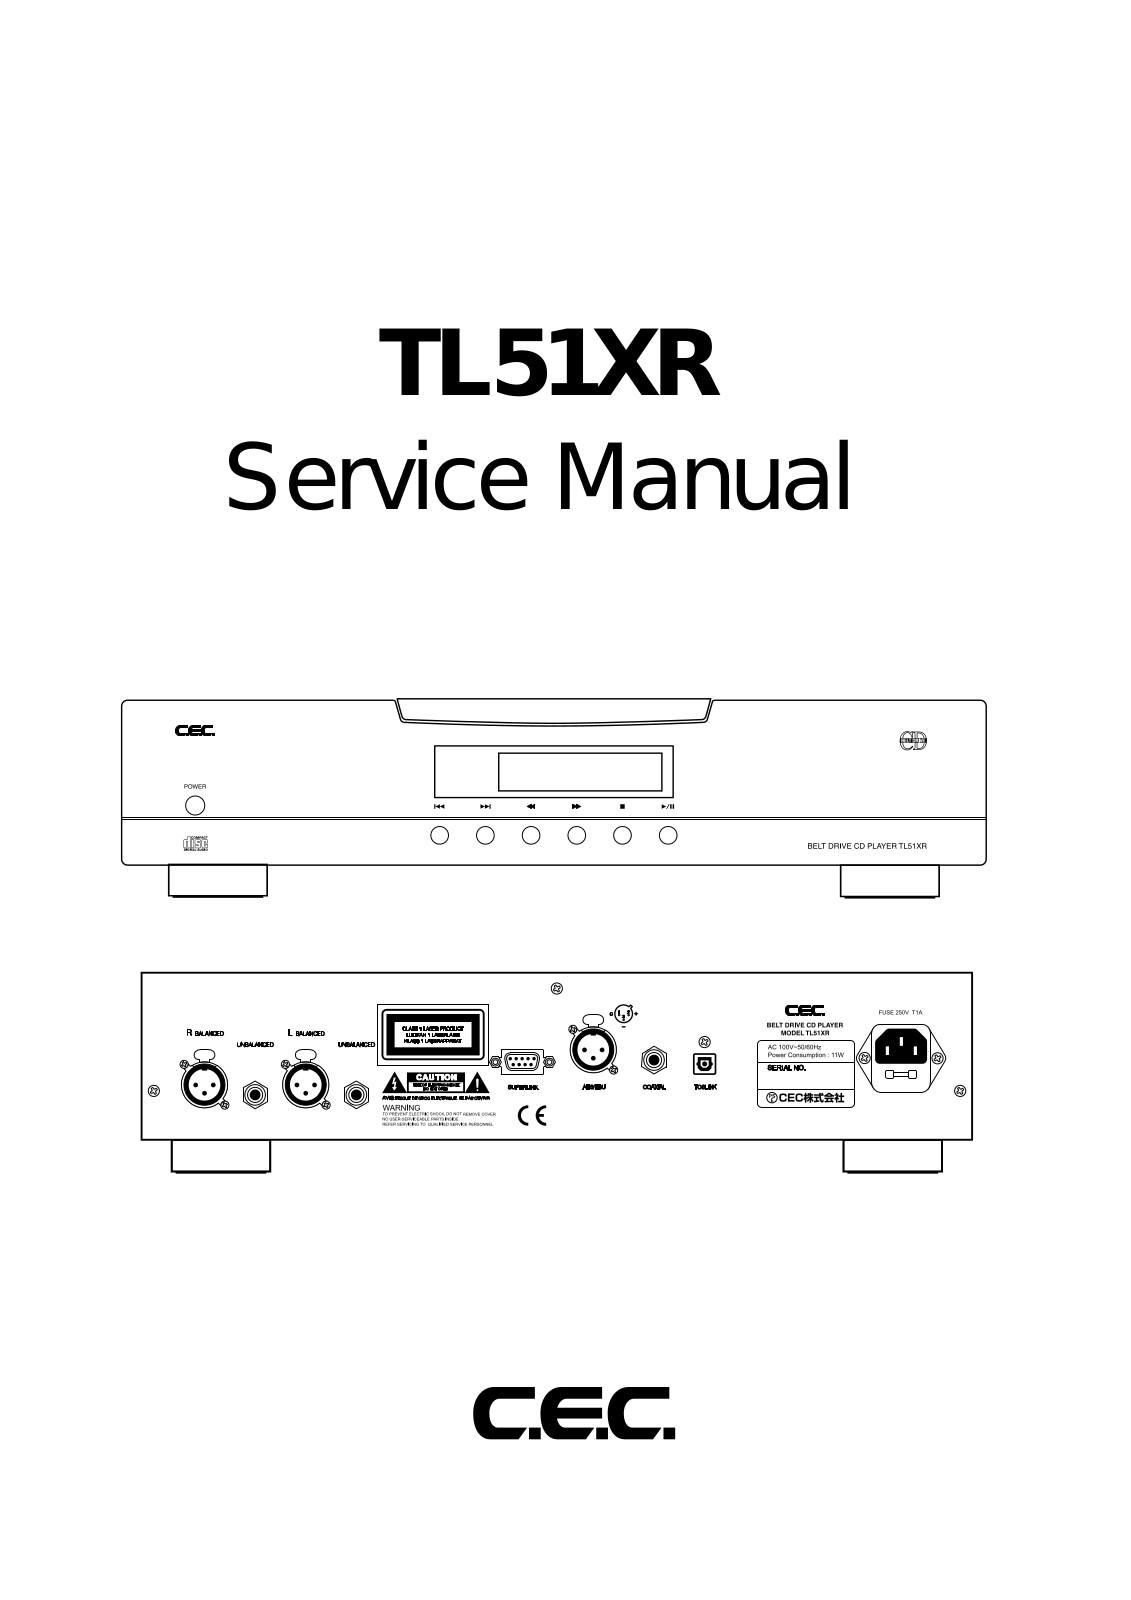 CEC TL51XR Service Manual